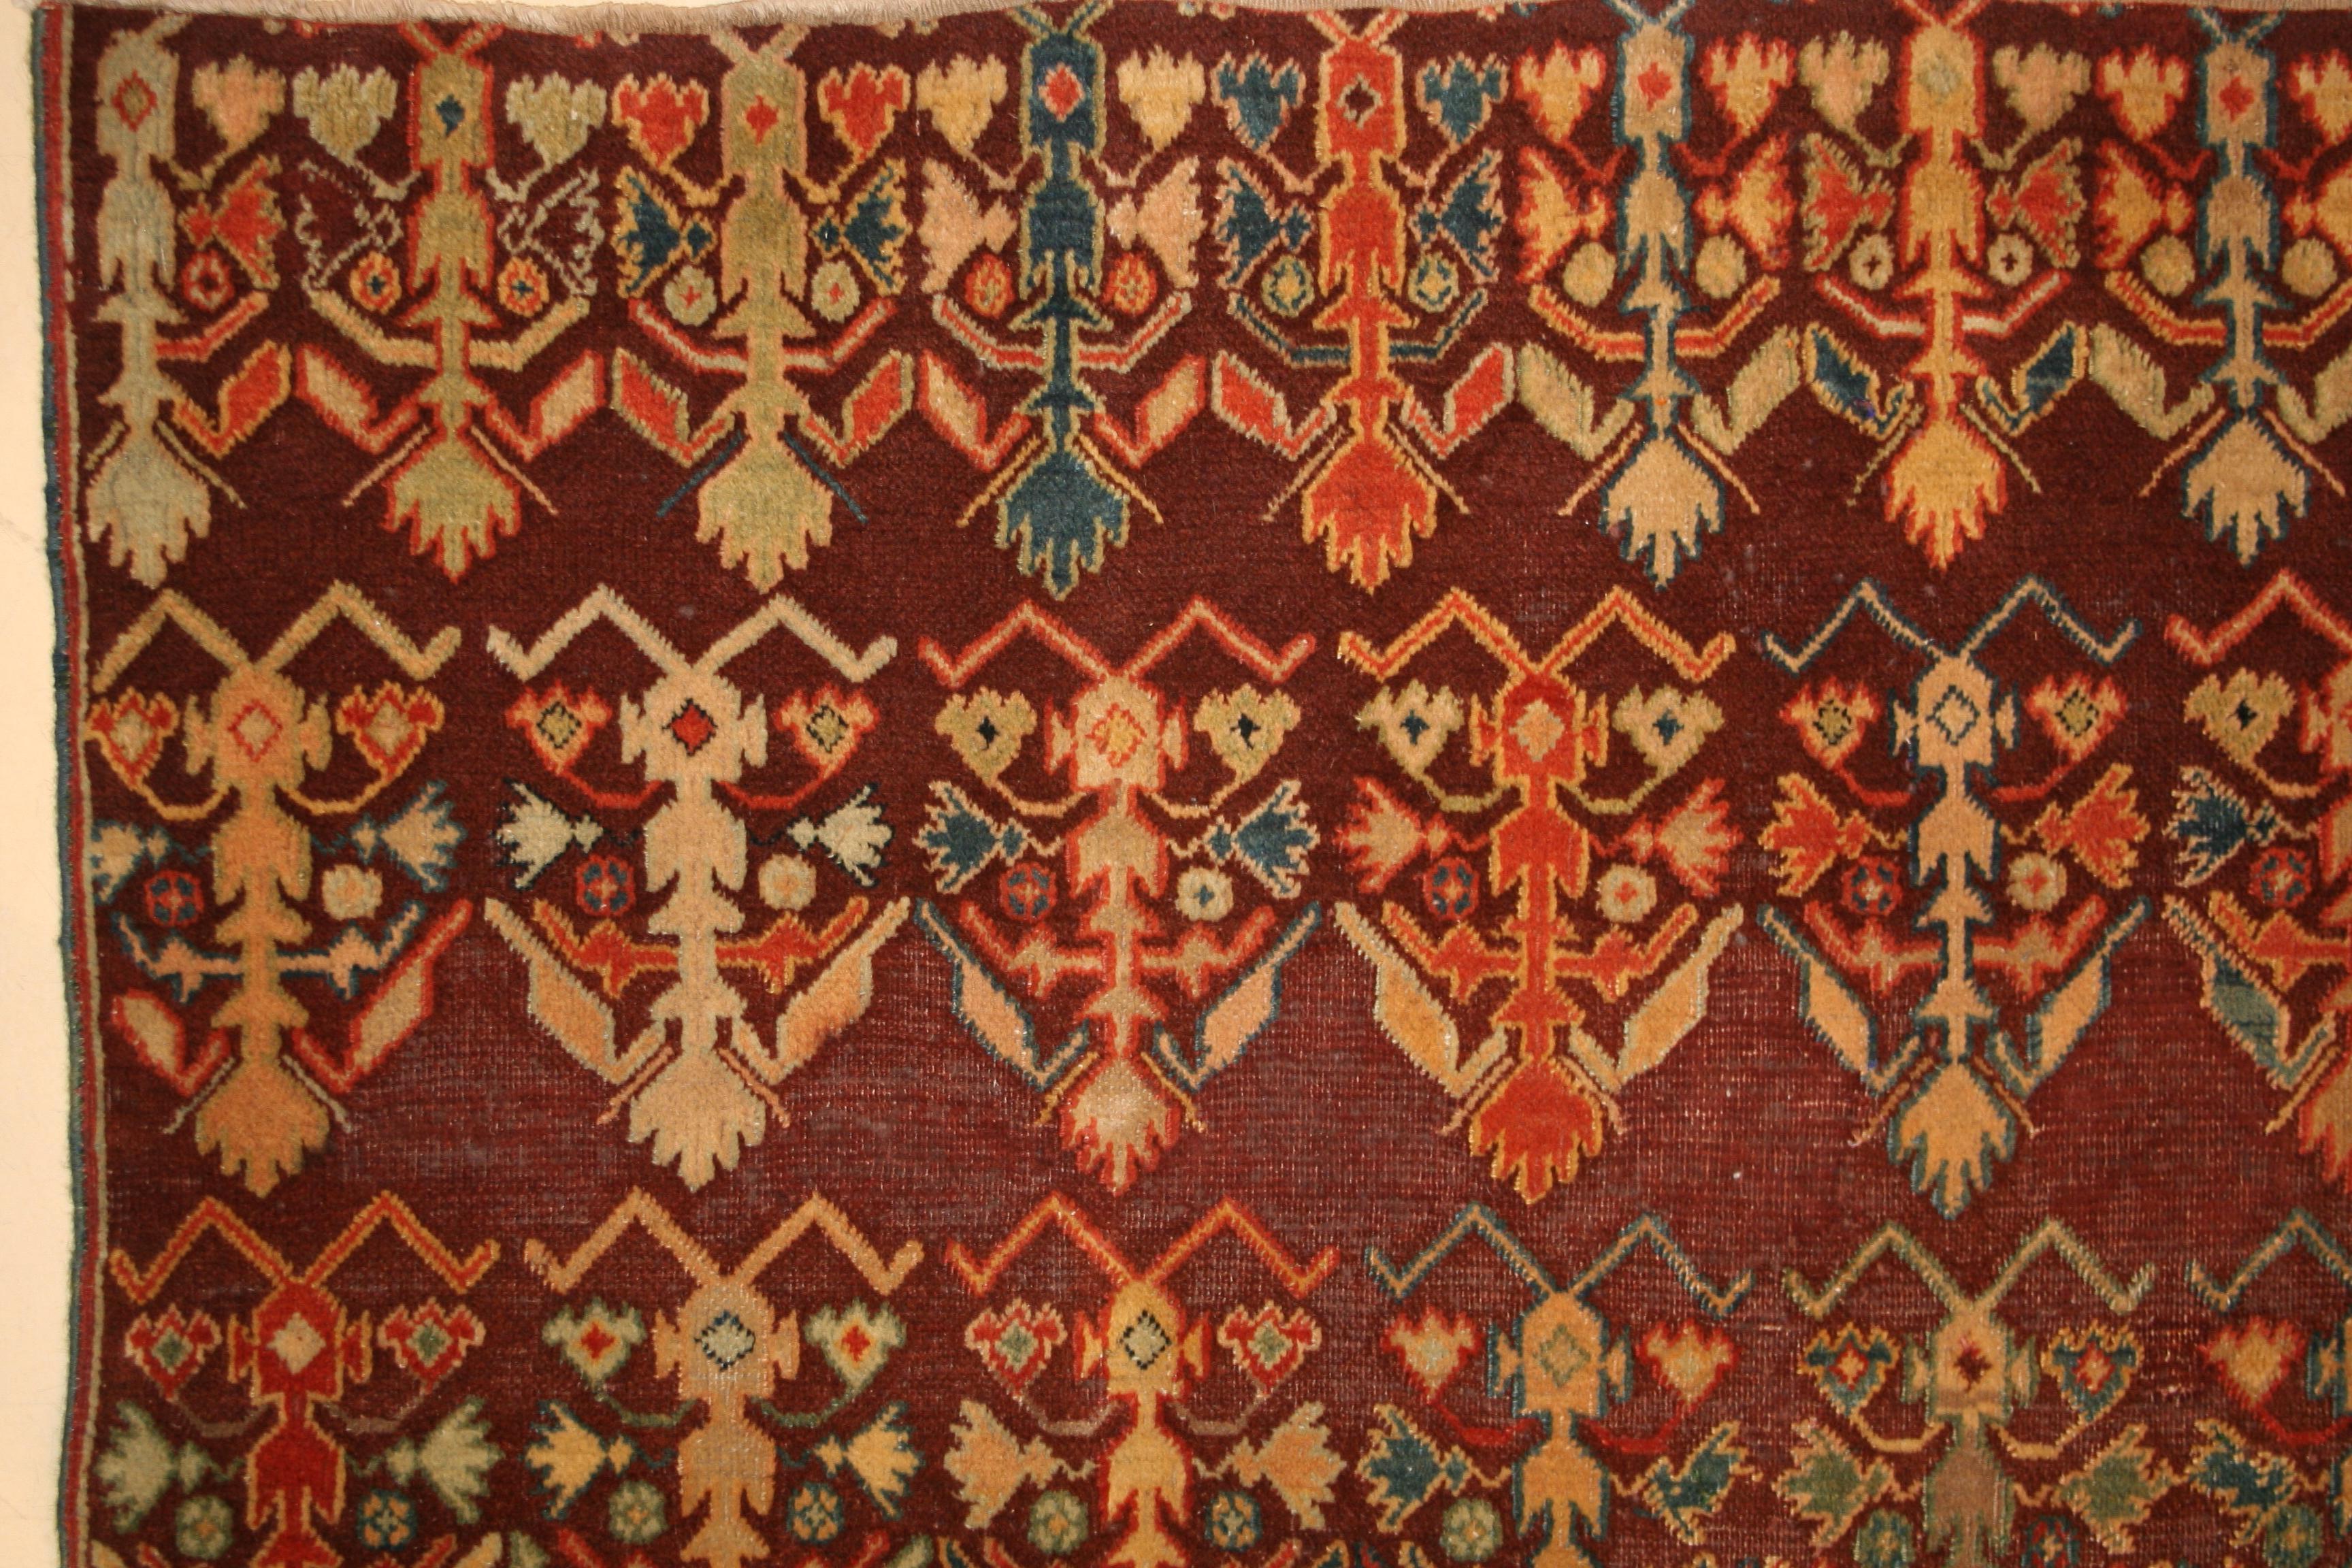 Les tapis anciens d'Agra ont toujours été considérés comme faisant partie des tapis décoratifs les plus raffinés. Elles ont été commandées par la noblesse britannique pendant la période coloniale pour orner leurs châteaux et palais. Cet exemple